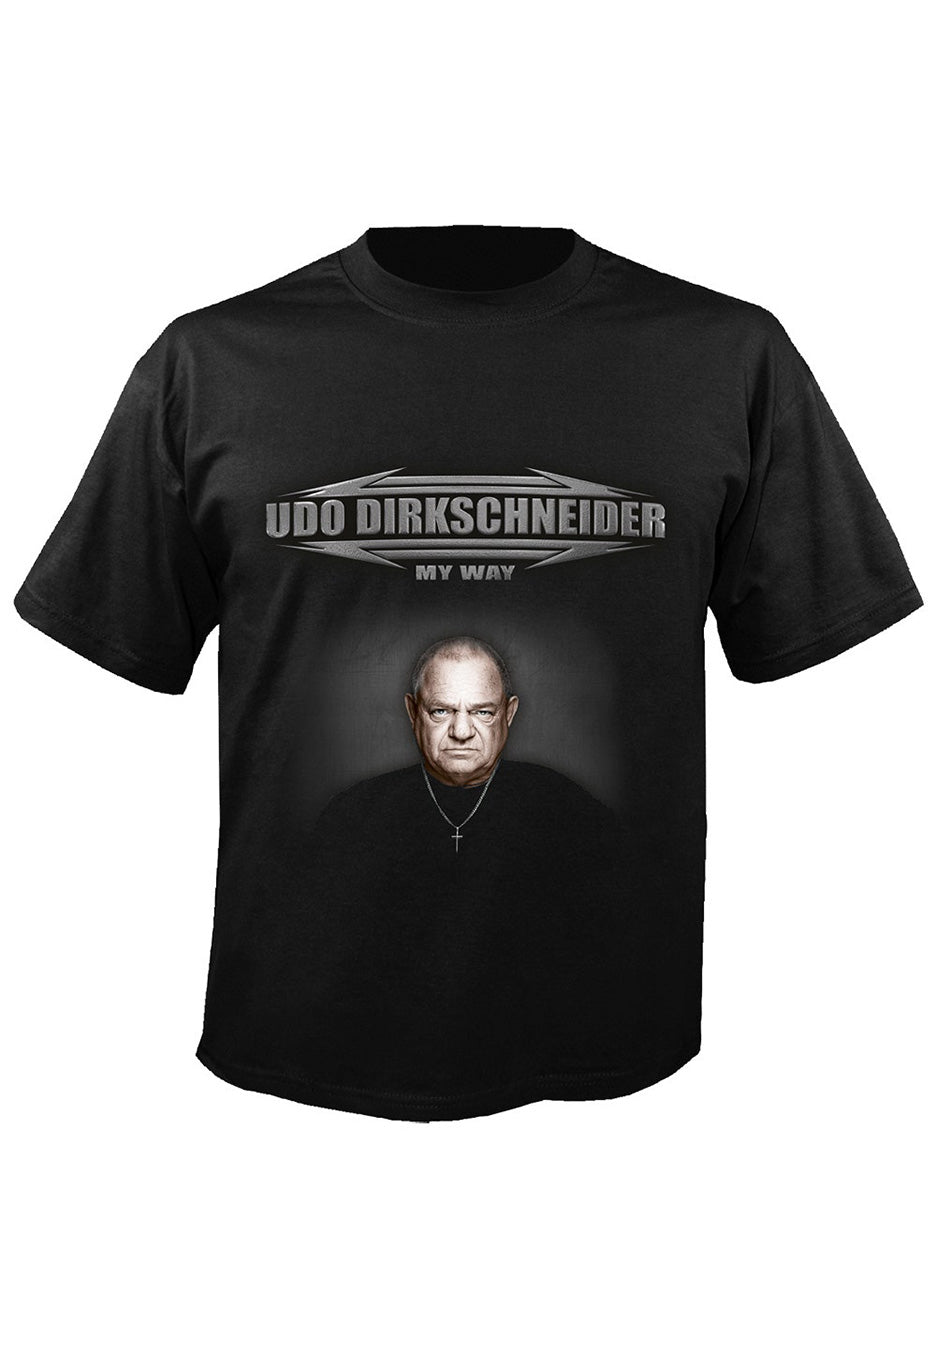 Udo Dirkschneider - My Way - T-Shirt